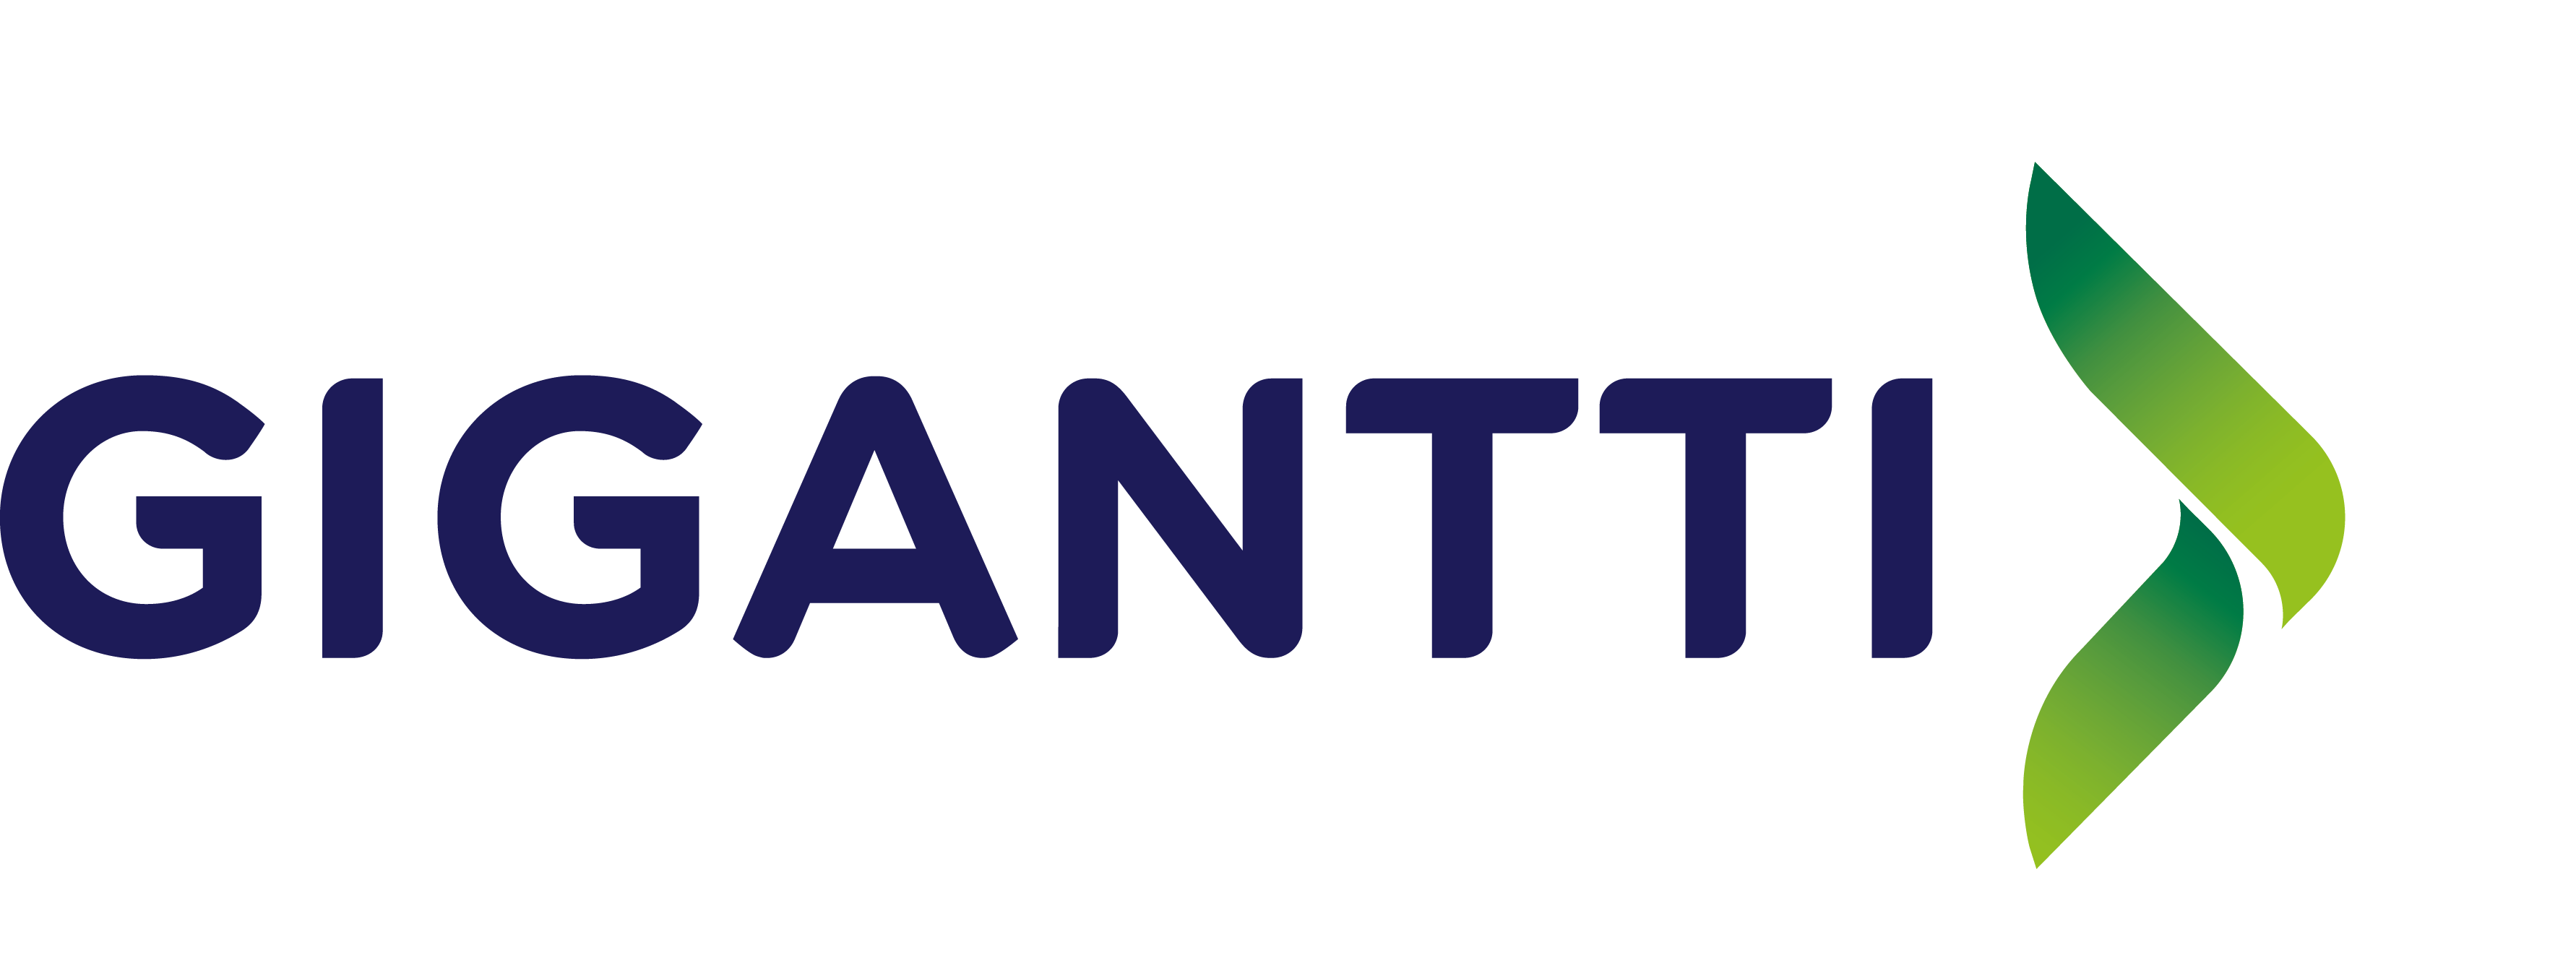 Gigantti_logo_blue_pantone (1).png